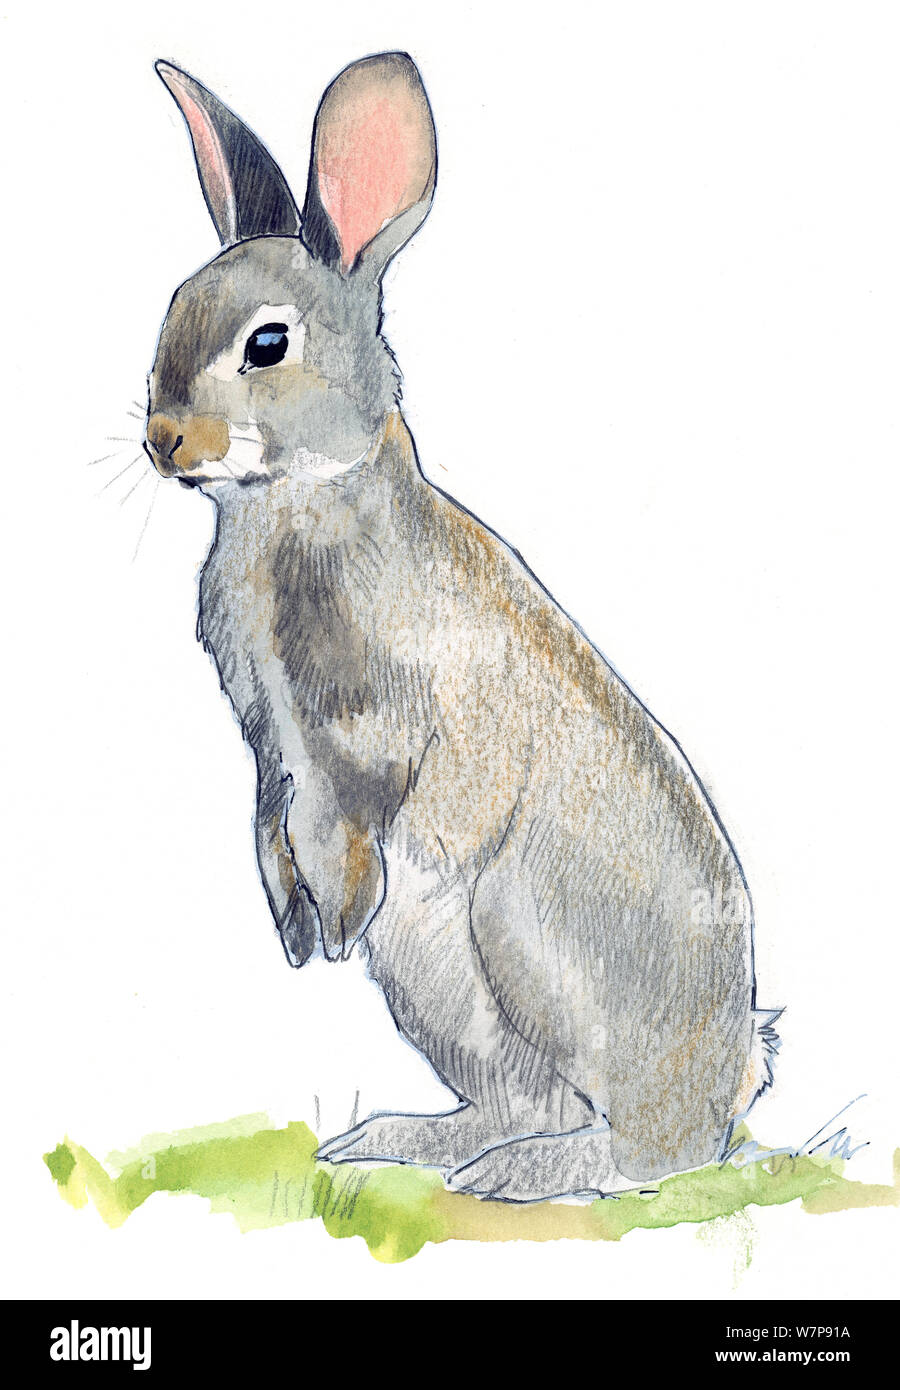 Ilustraciones de conejos fotografías e imágenes de alta resolución - Alamy